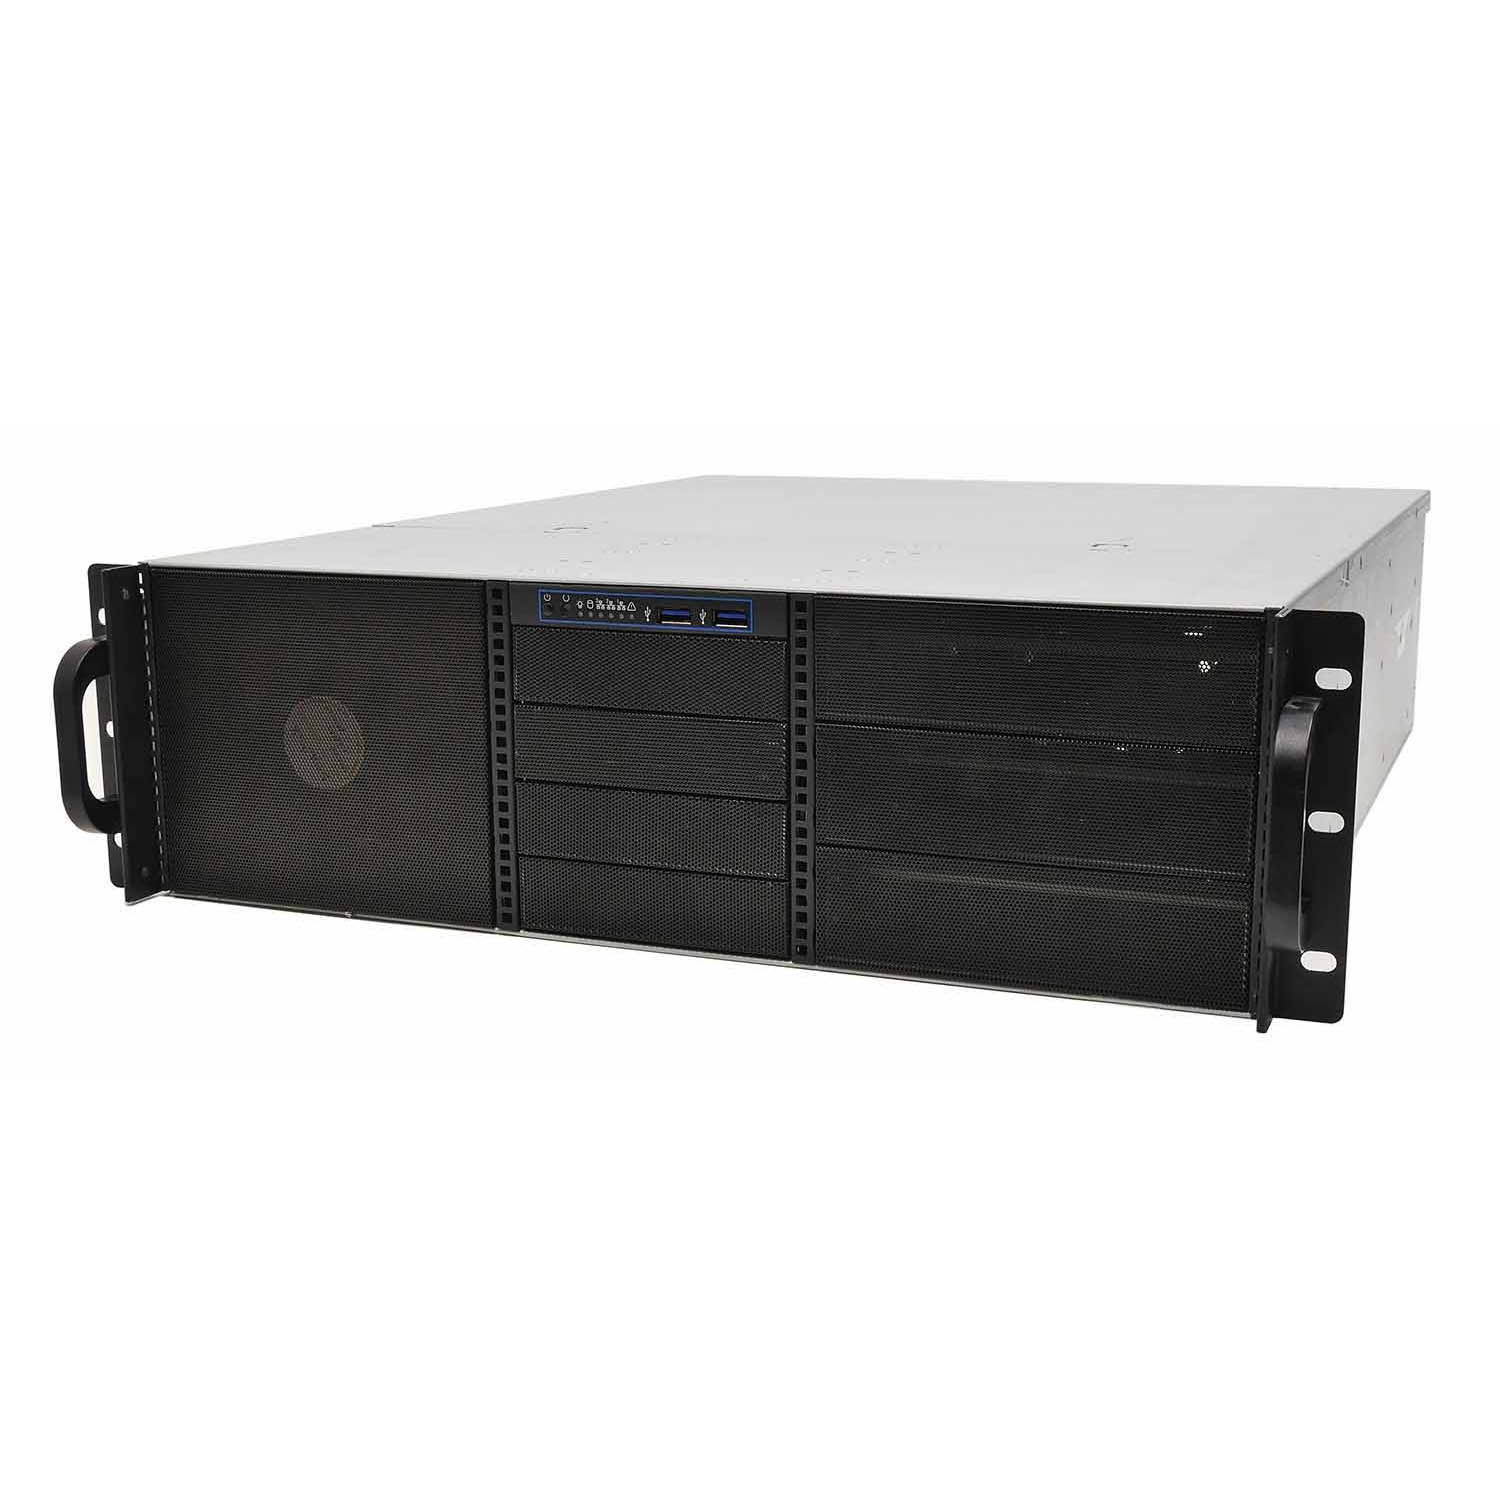 Серверный корпус 3U NR-N3014 1000Вт (EATX 12x13, 3x5.25ext, 4x3.5ext, 5х3.5int, 480мм), NegoRack